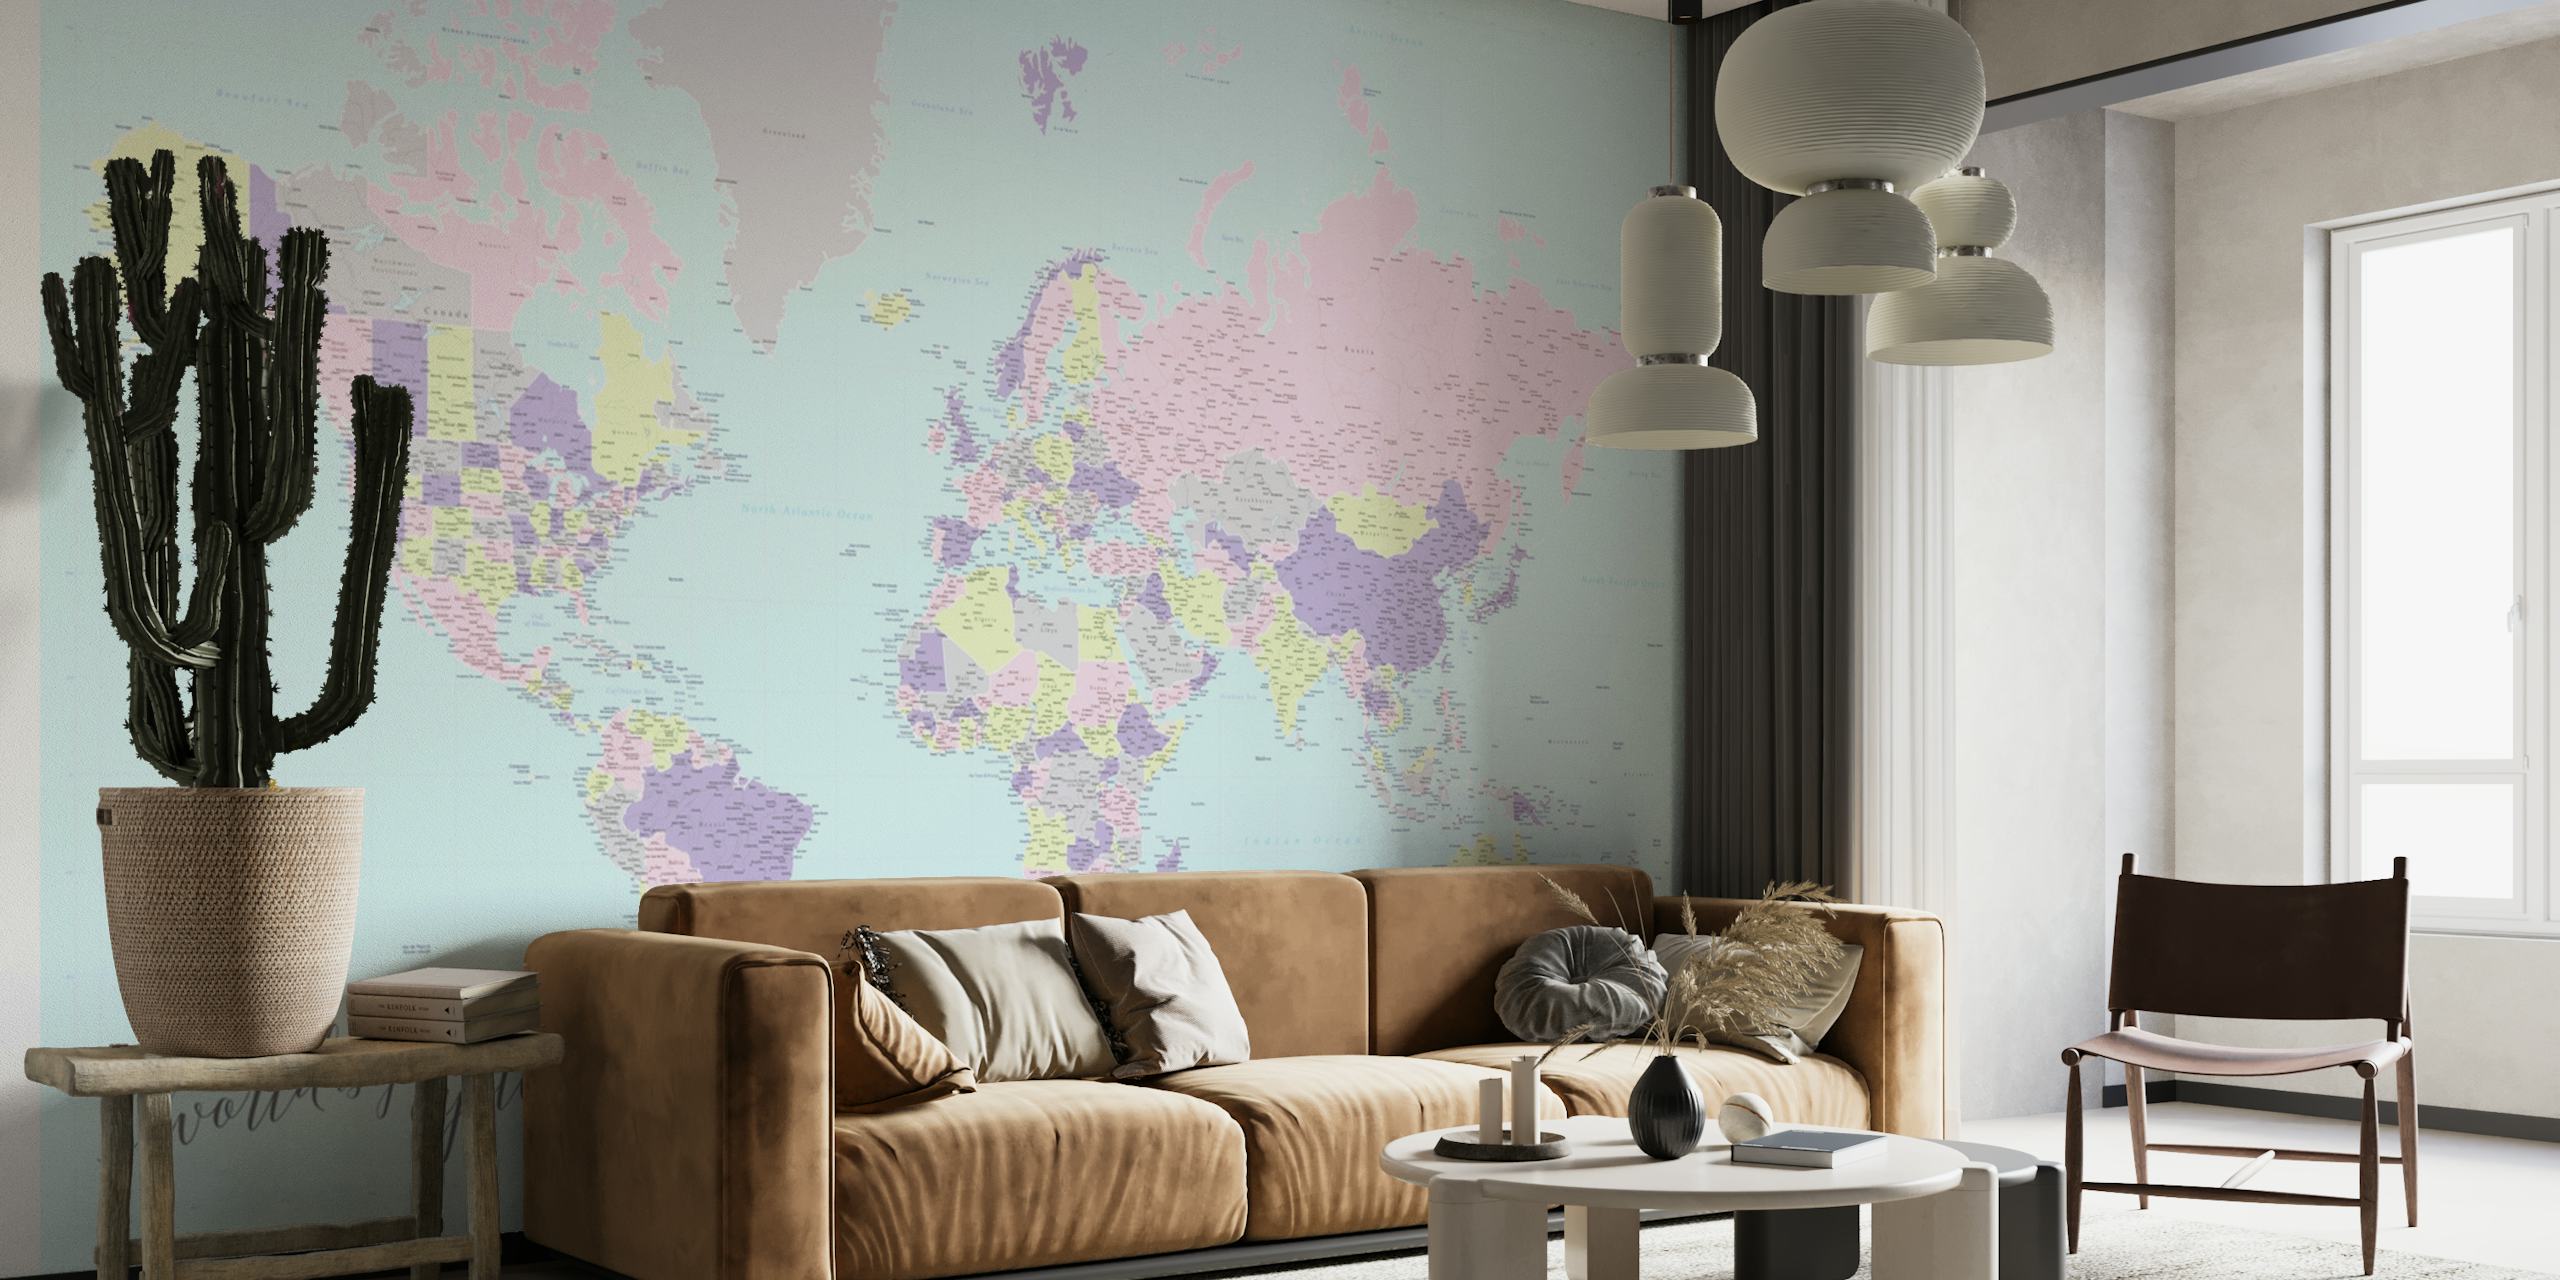 Carta da parati Hatsu con mappa del mondo Oyster in colori pastello con rappresentazioni artistiche dei continenti